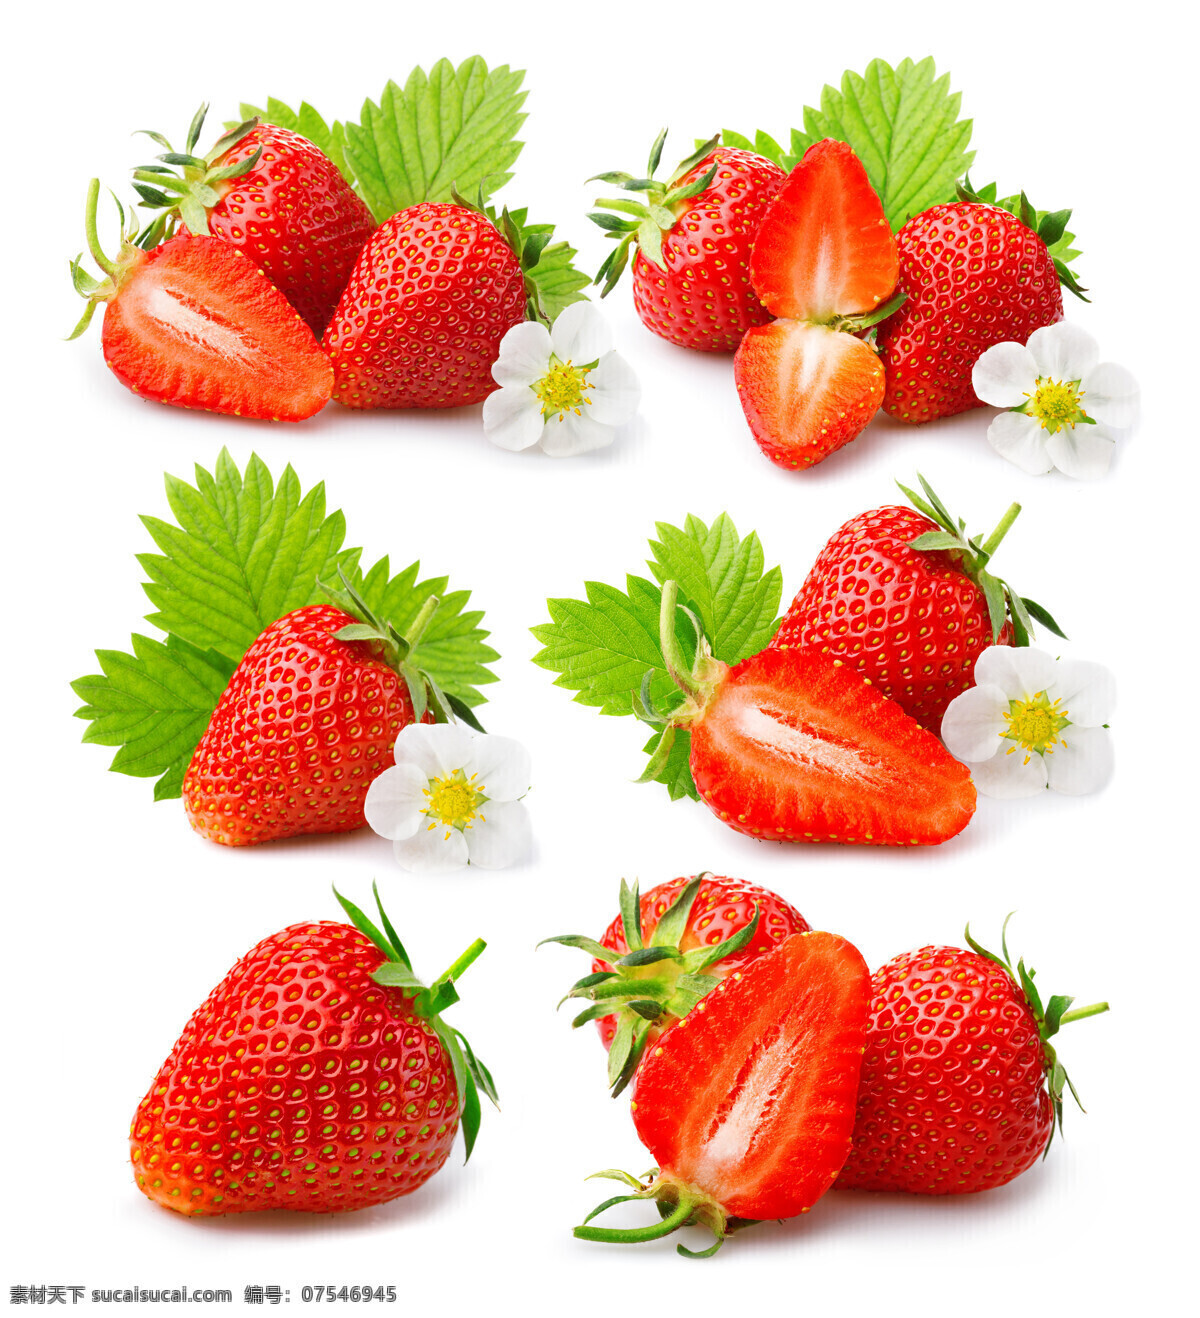 草莓特写 鲜红色草莓 红草莓 熟透草莓 半大草莓 小草莓 红色草莓 草莓叶子 摘草莓 生物世界 水果